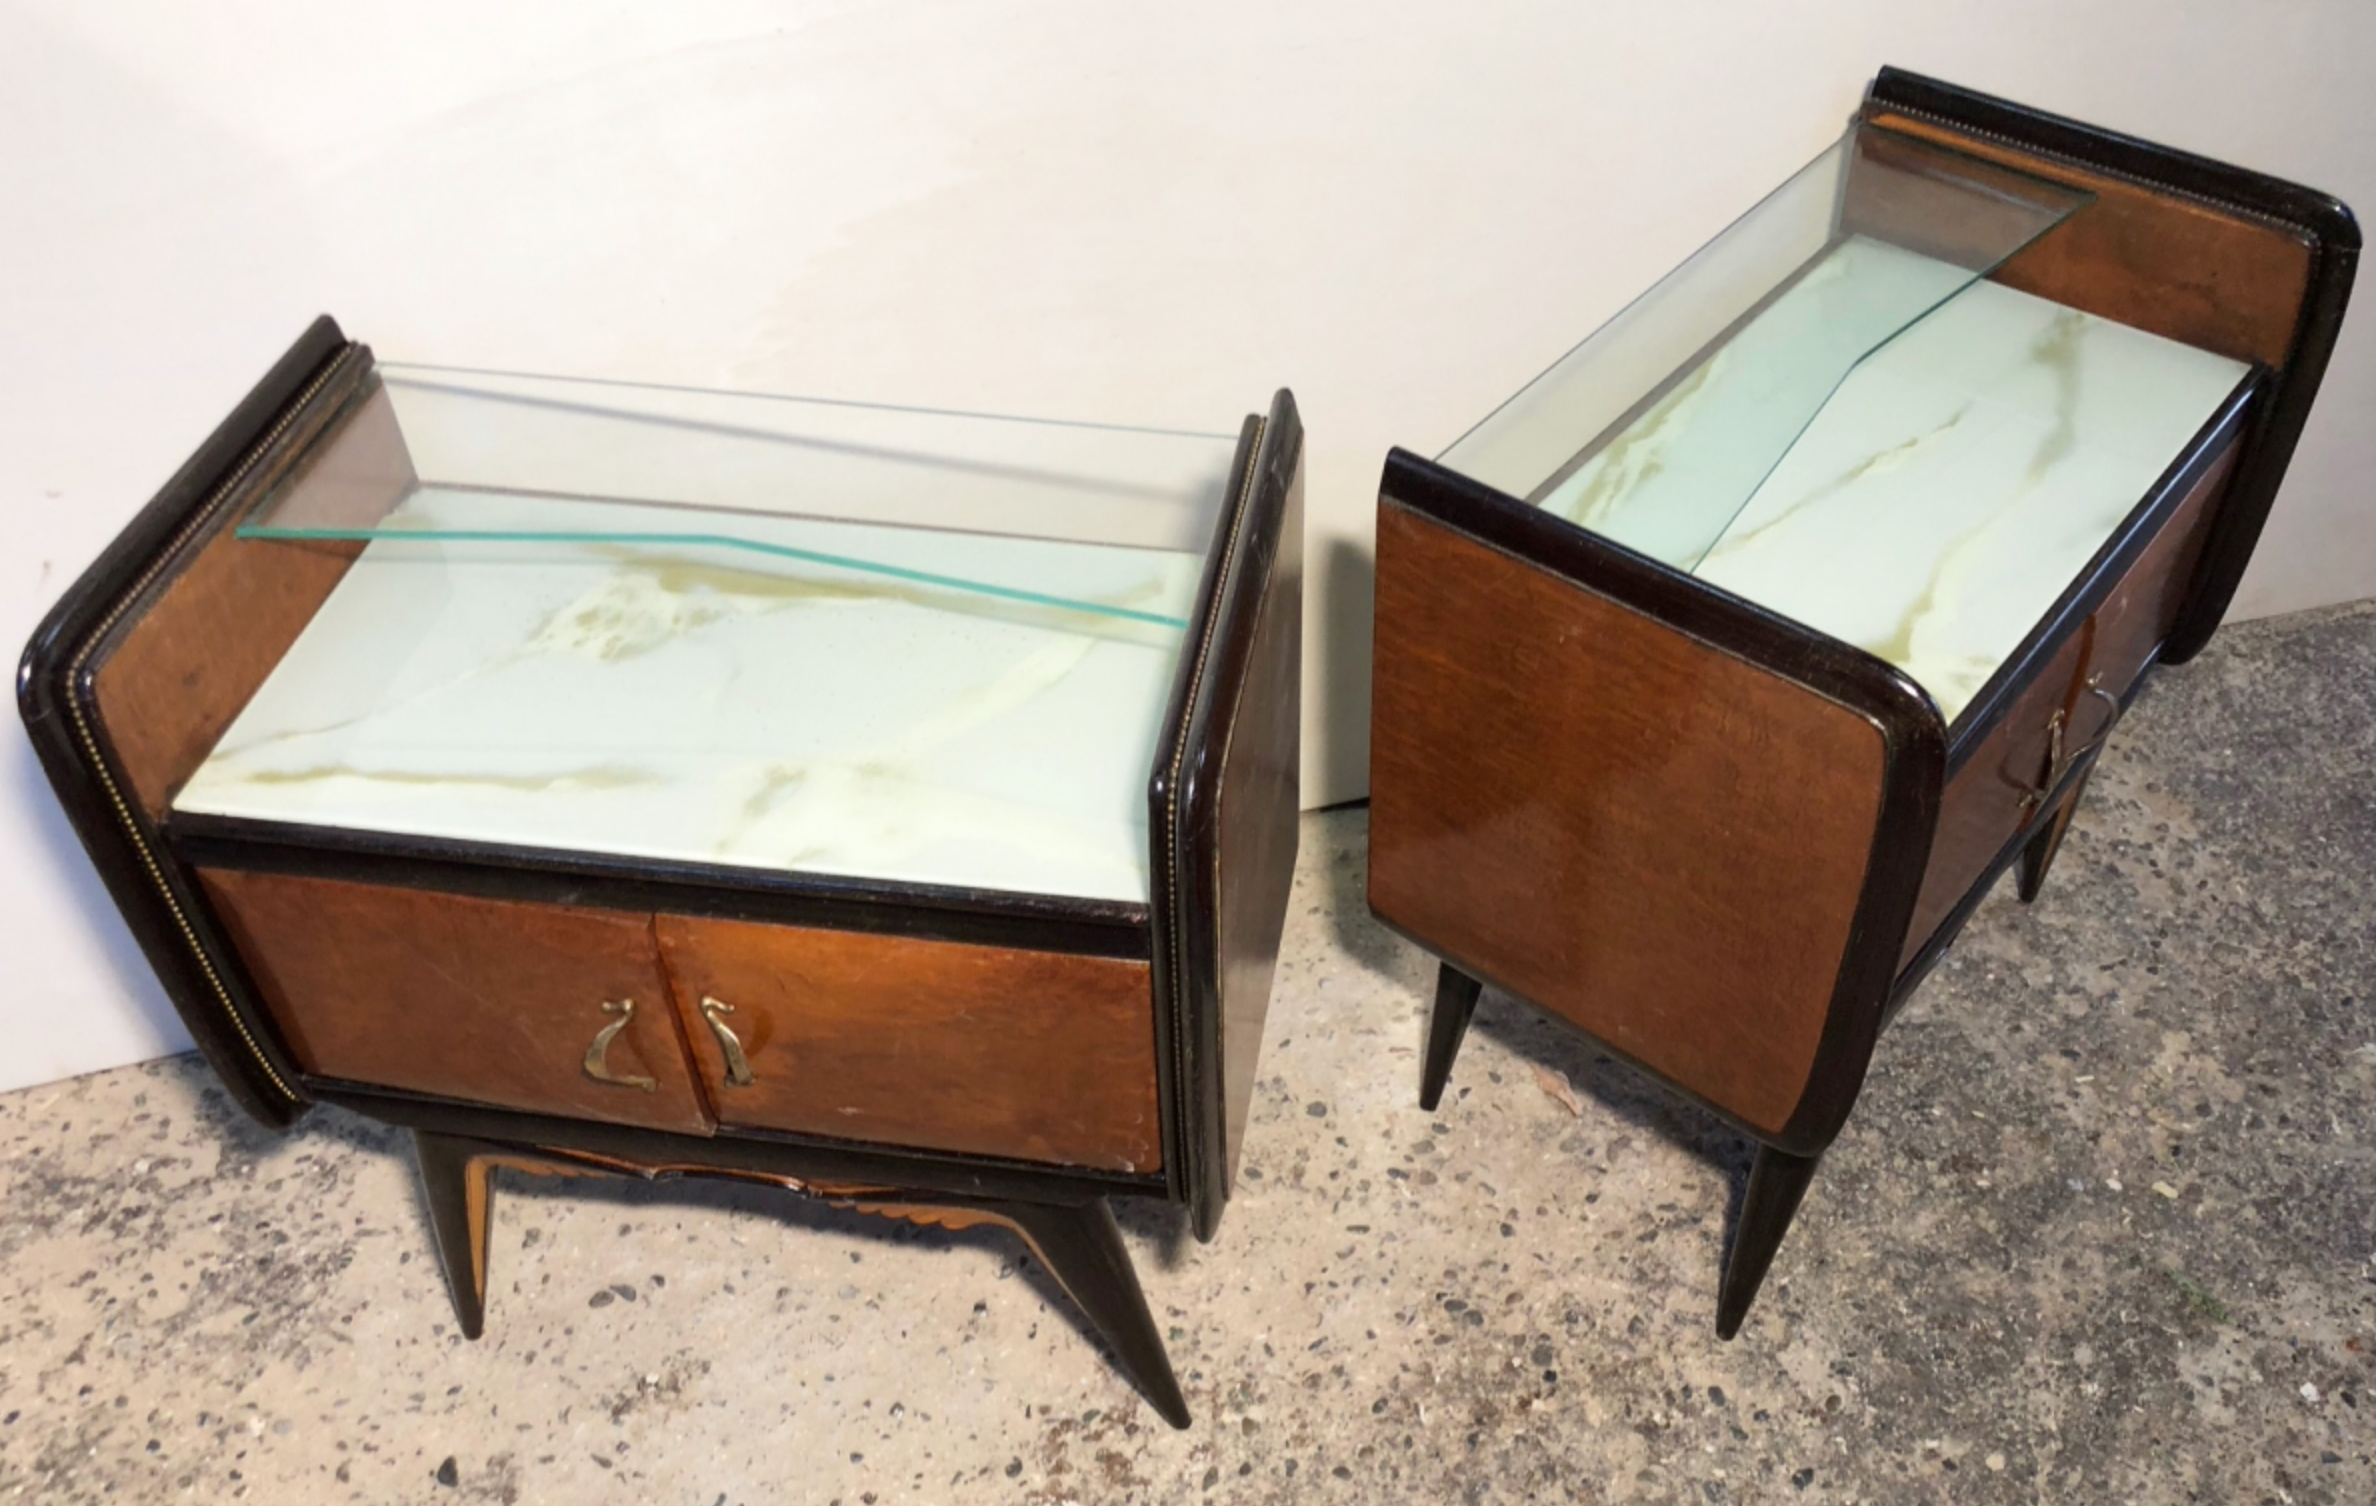 Coppia di comodini anni 50 con vetro marmorizzato e legno ebanizzato